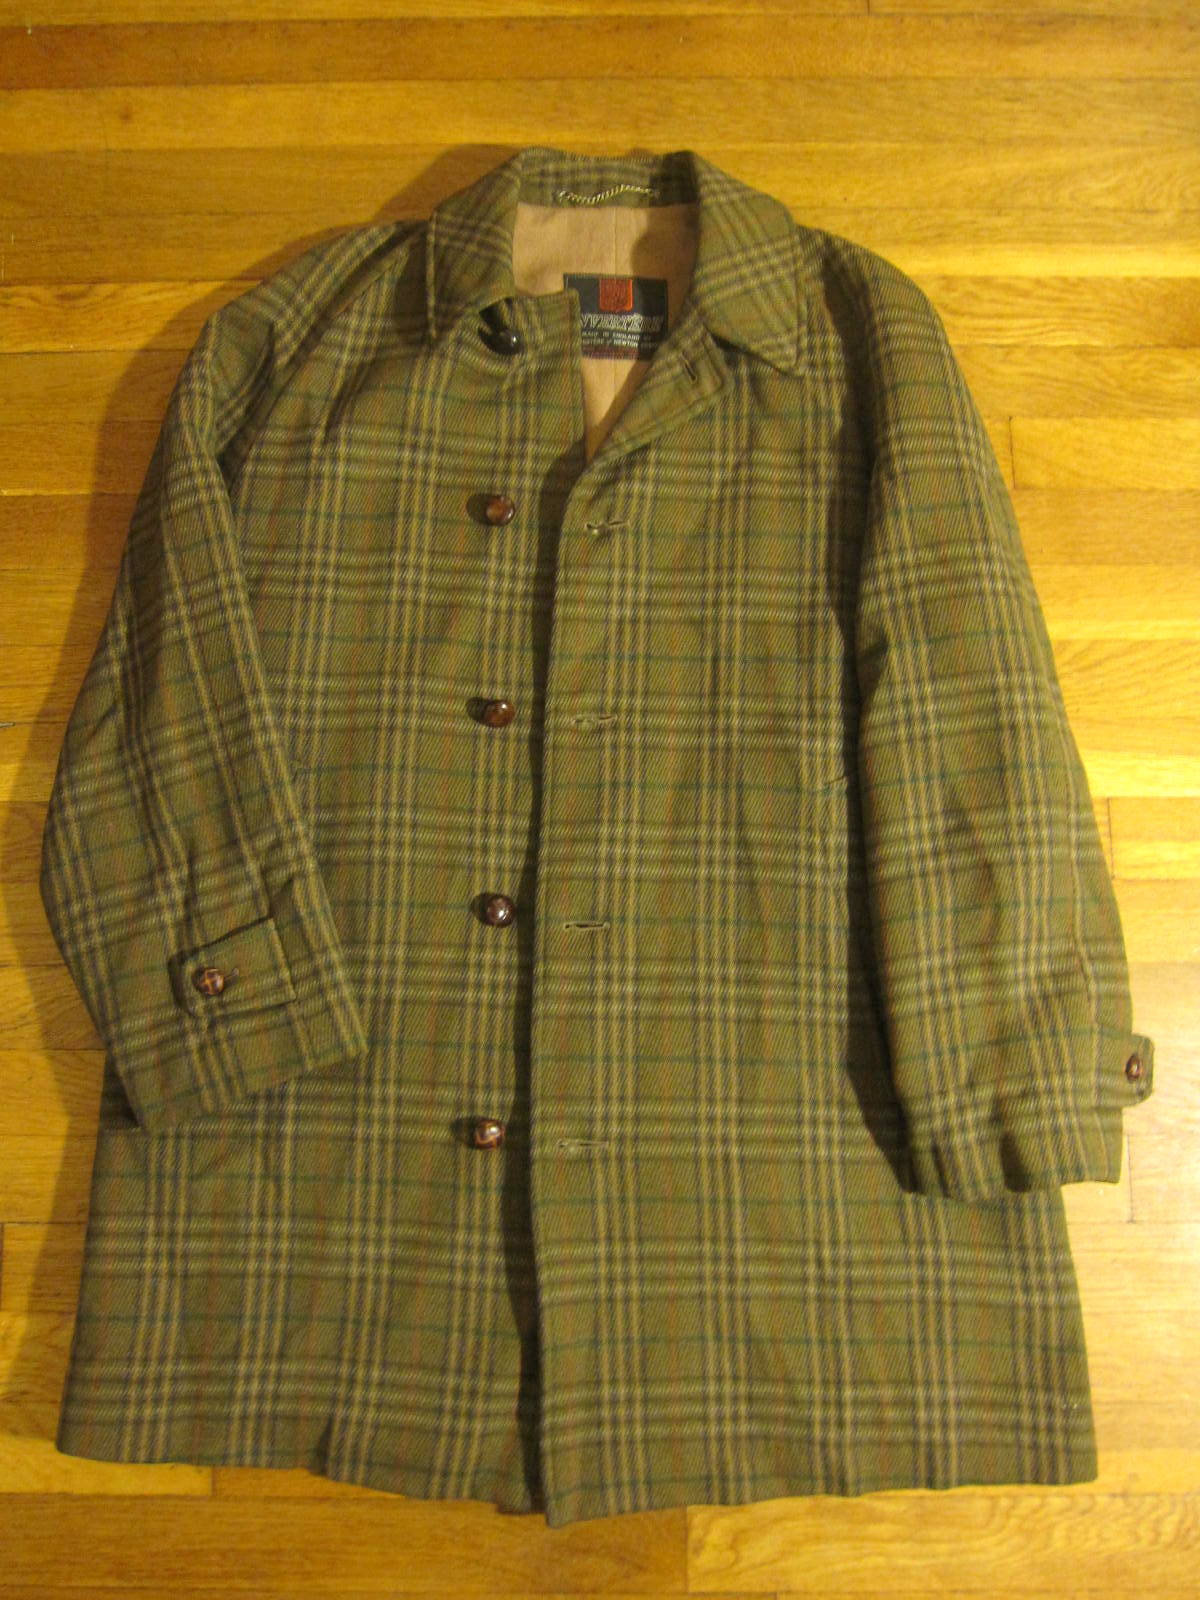 An Affordable Wardrobe: November 2011